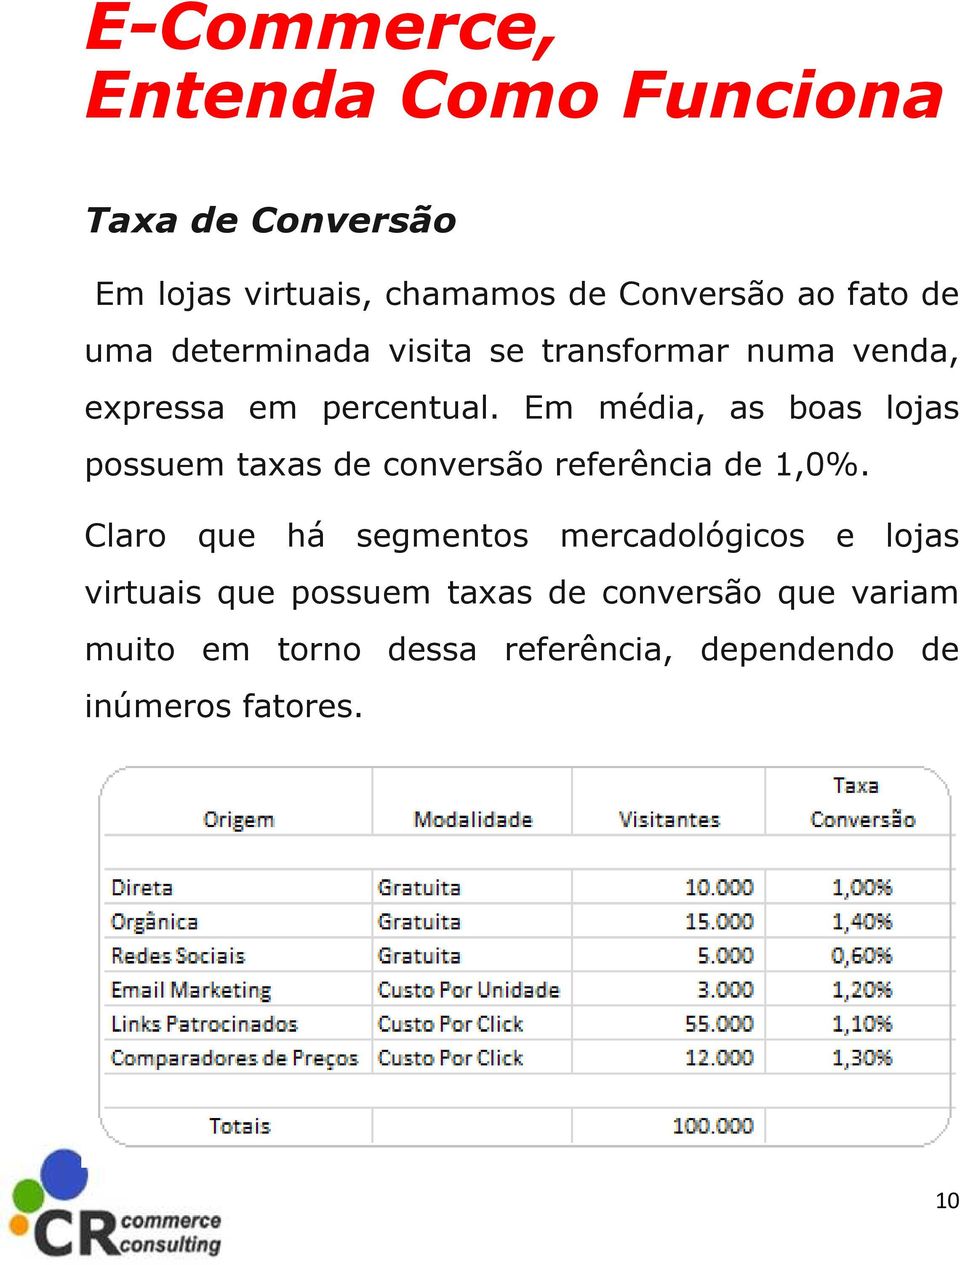 Em média, as boas lojas possuem taxas de conversão referência de 1,0%.